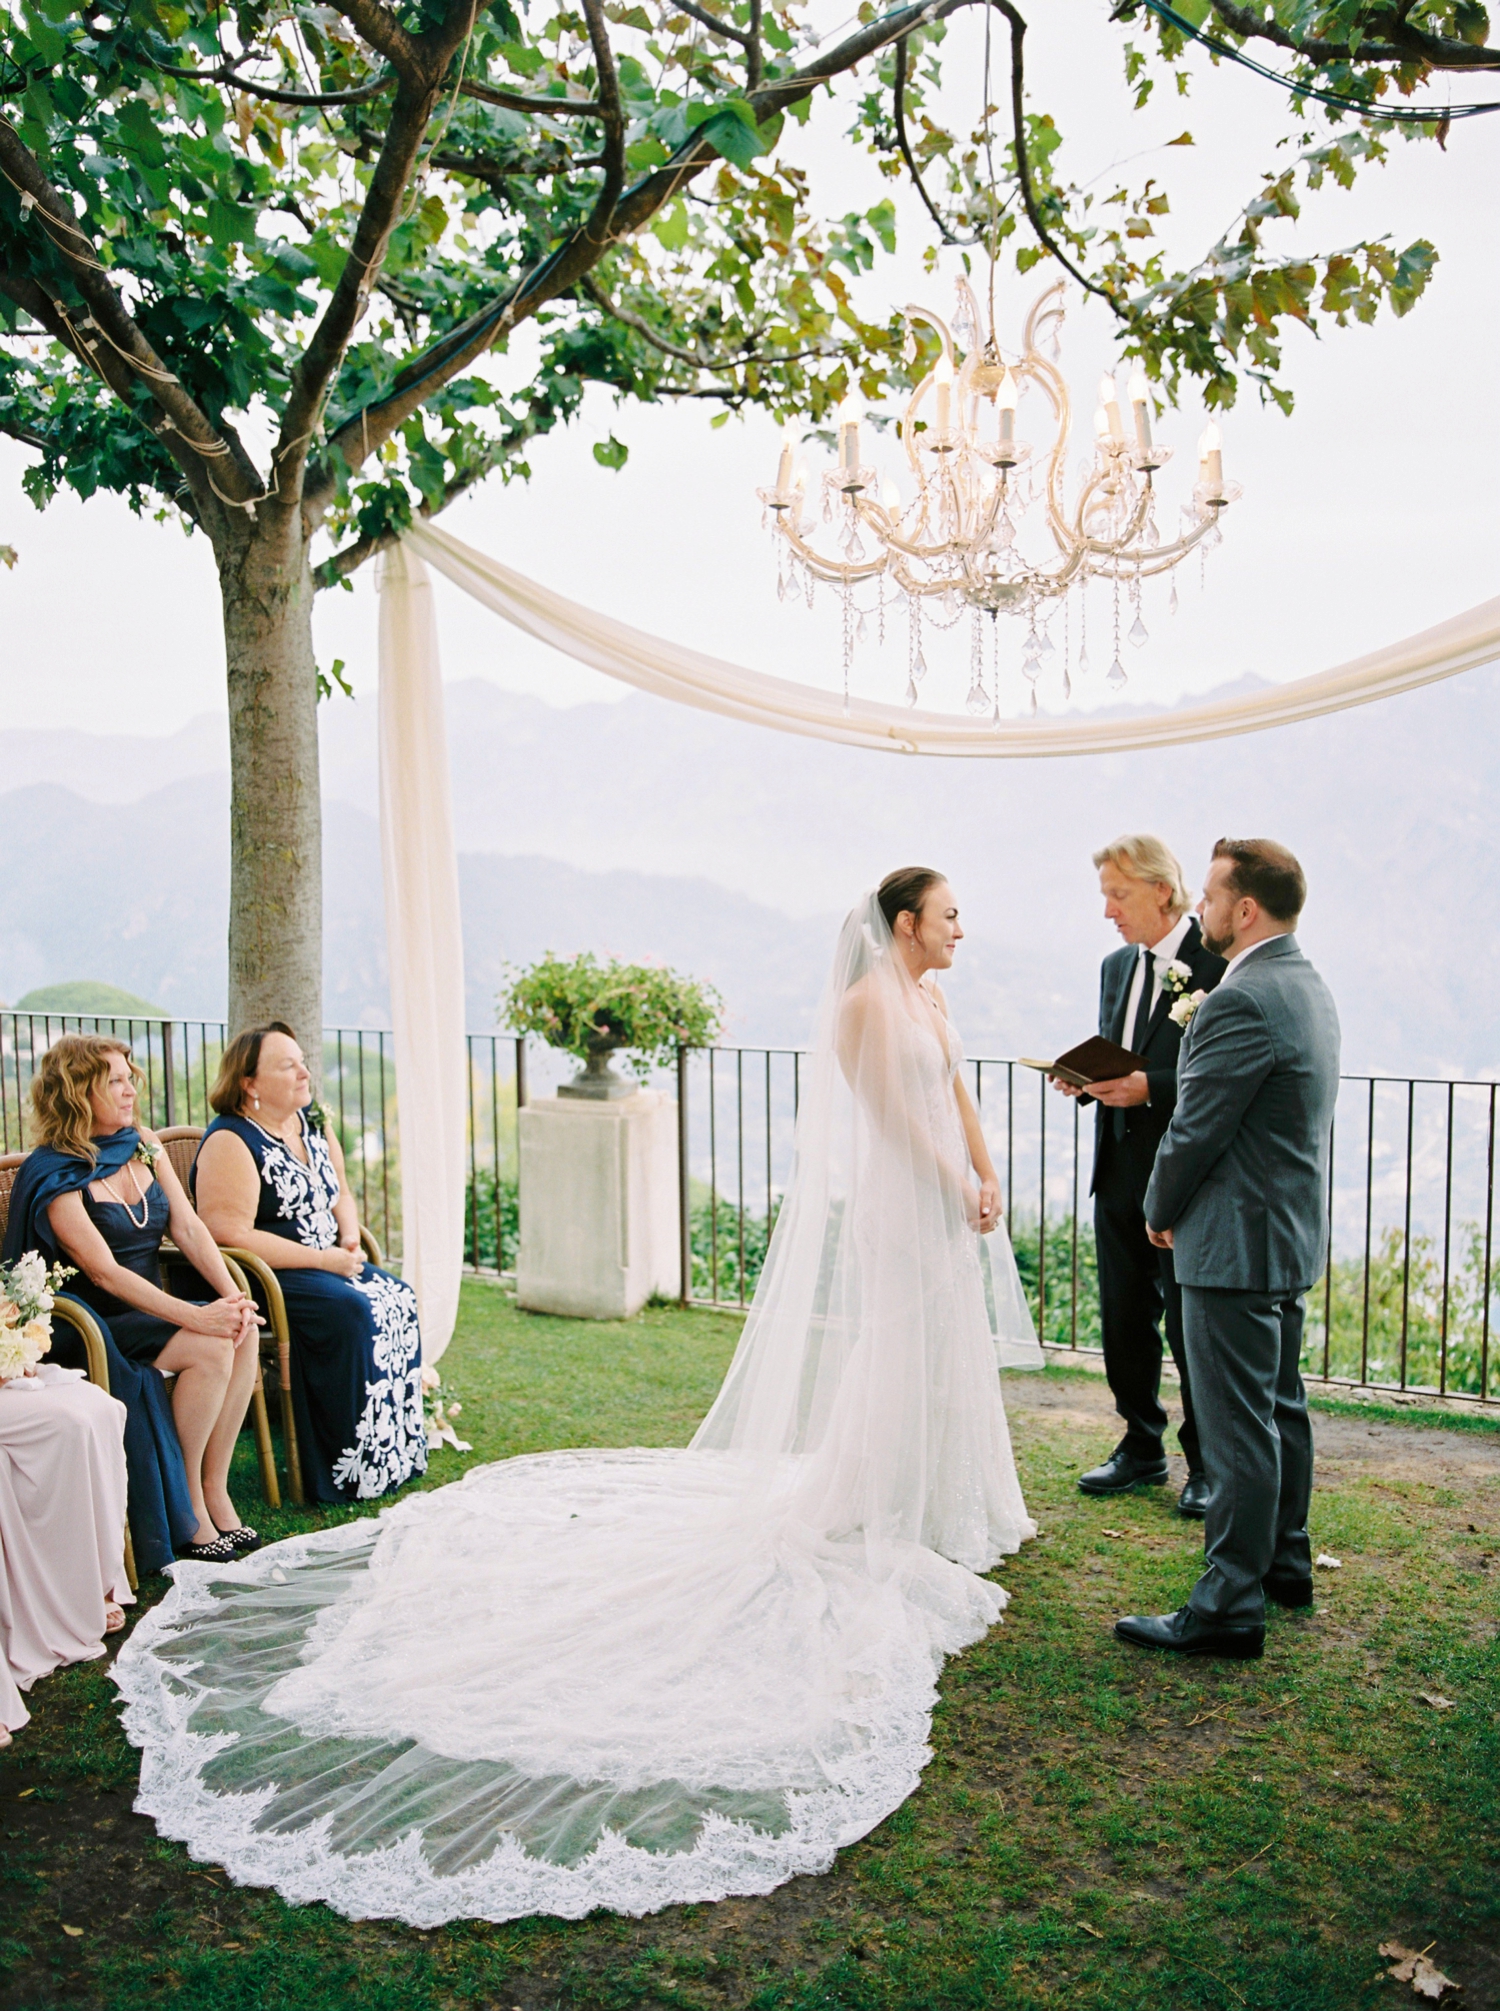 Ravello Italy Amafli Coast destination wedding photographers | english speaking wedding photographer in Italy | Justine Milton Photography | ceremony